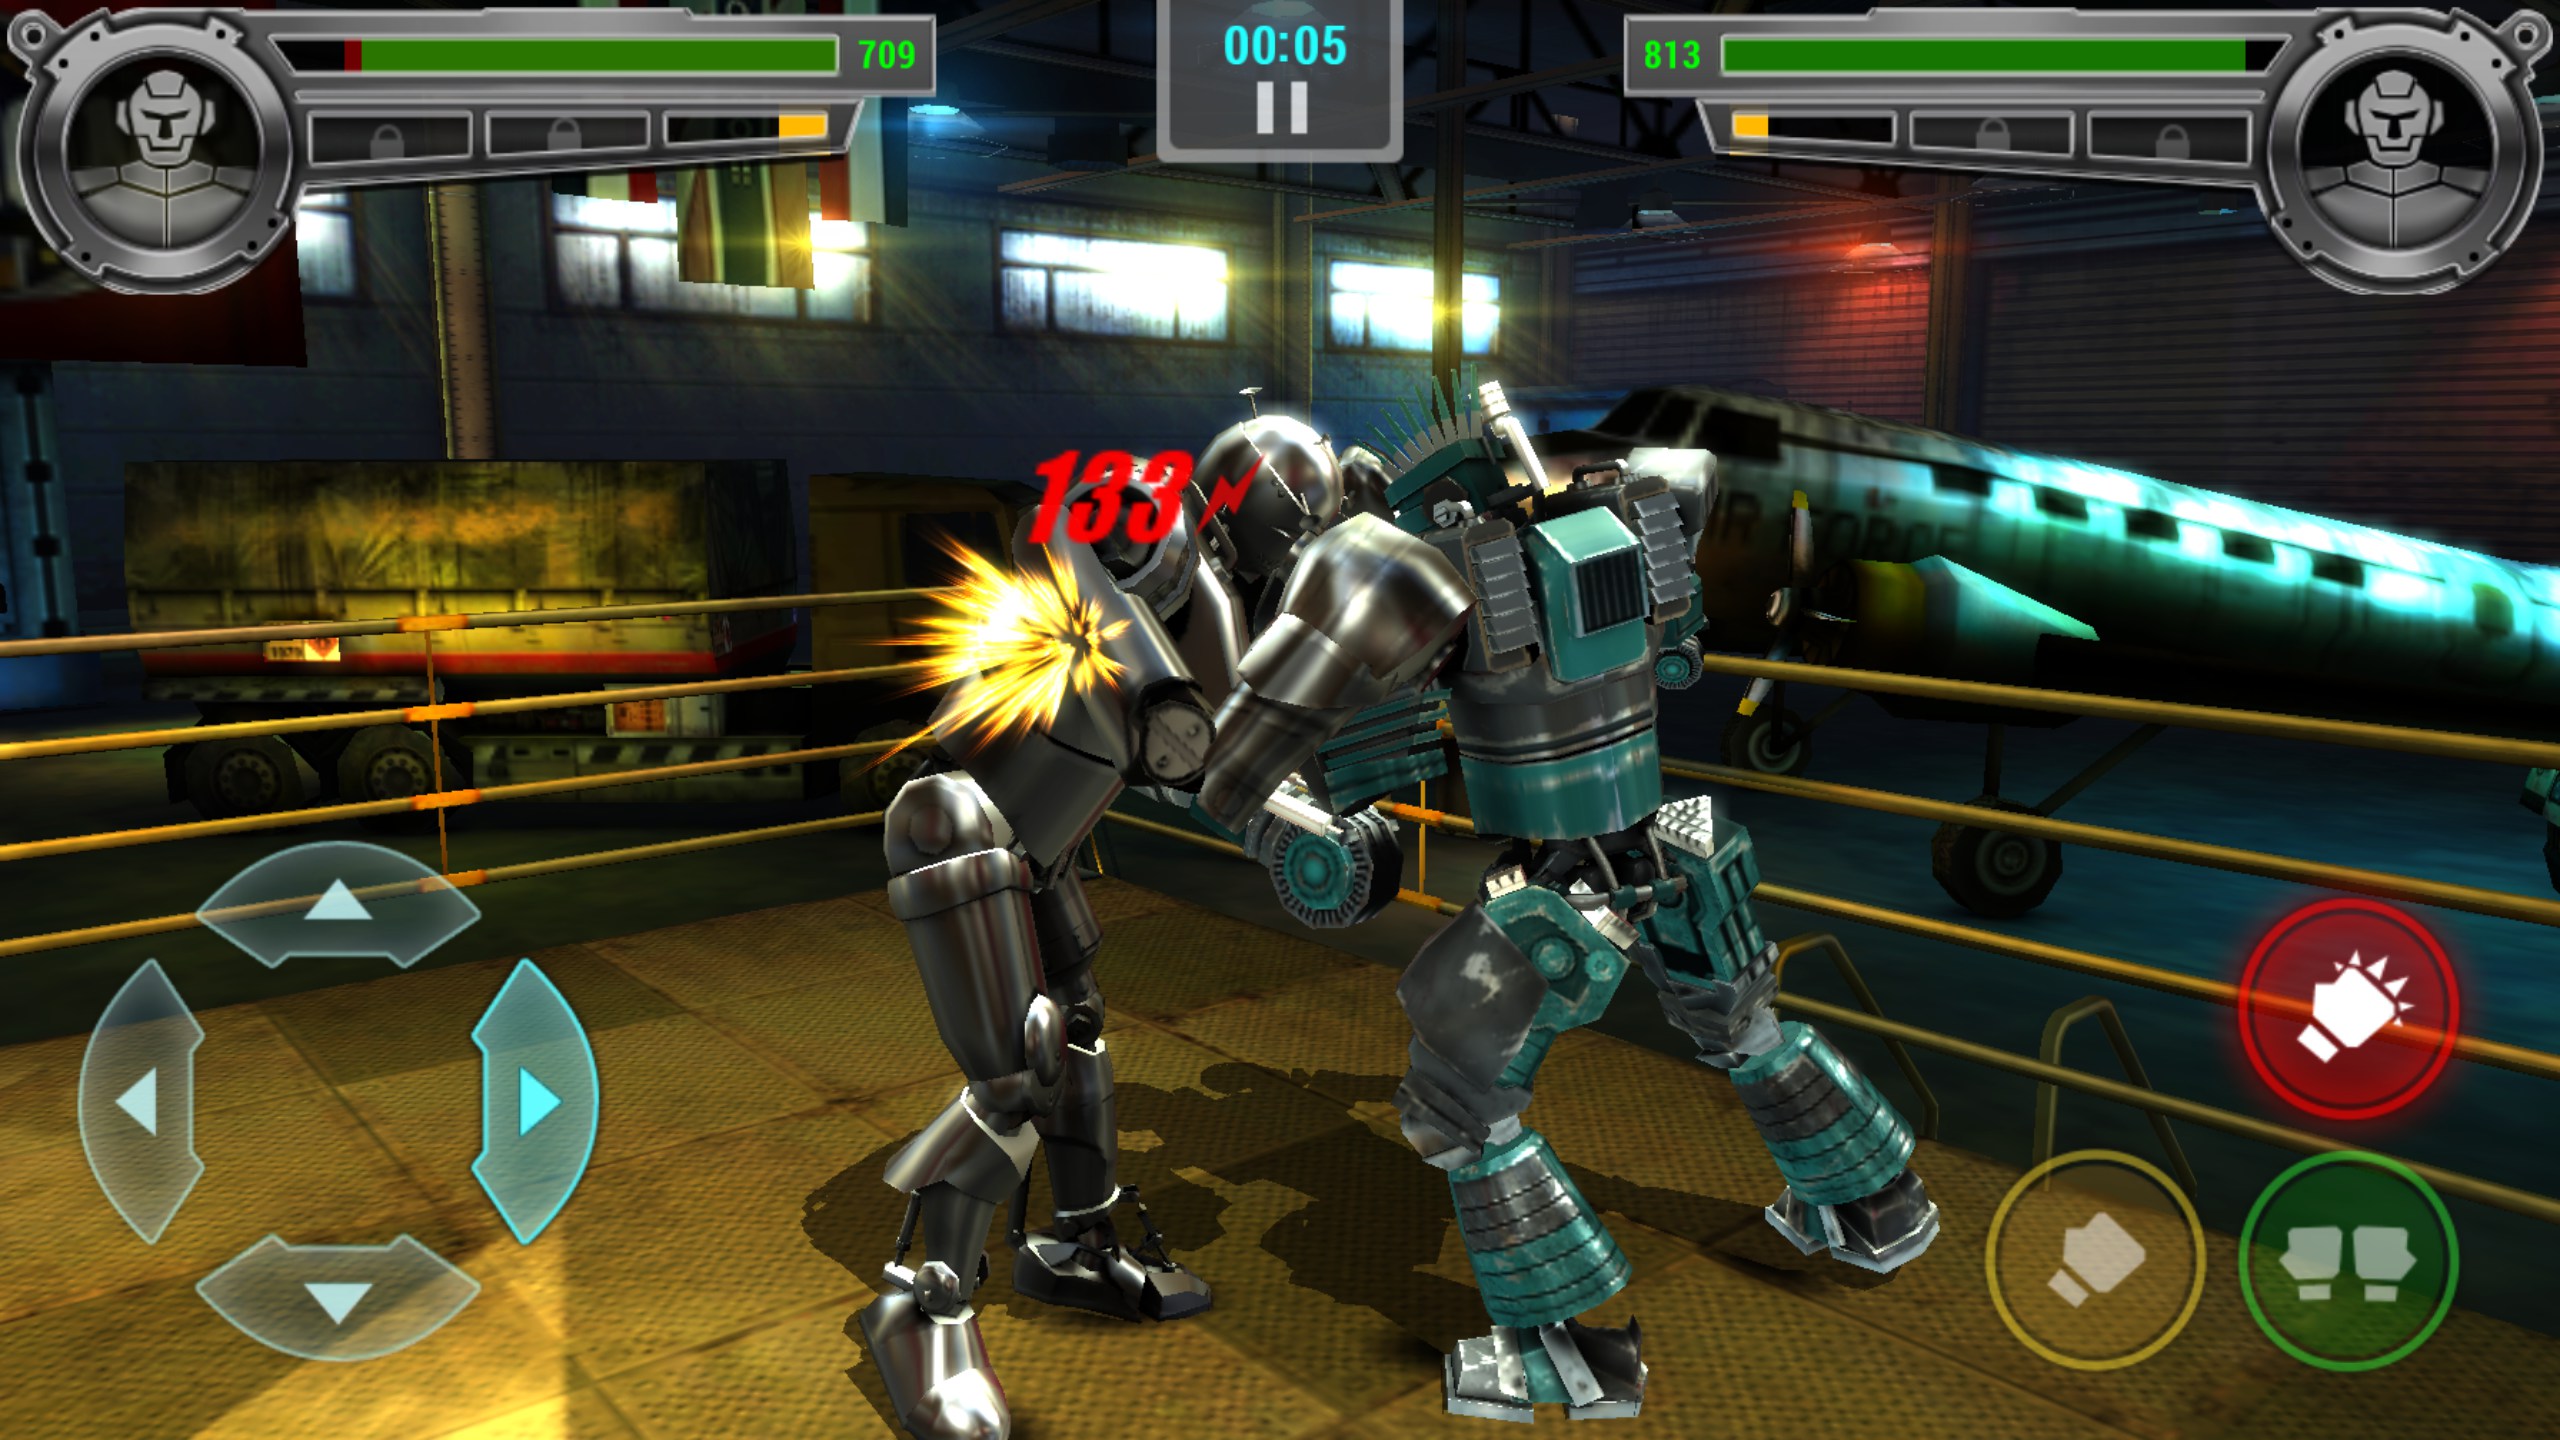 Игры про создание телефонов. Real Steel Robot Boxing игра. Живая сталь игра Boxing Champions. Real Steel 2 игра. Real Steel игра андроид атом.